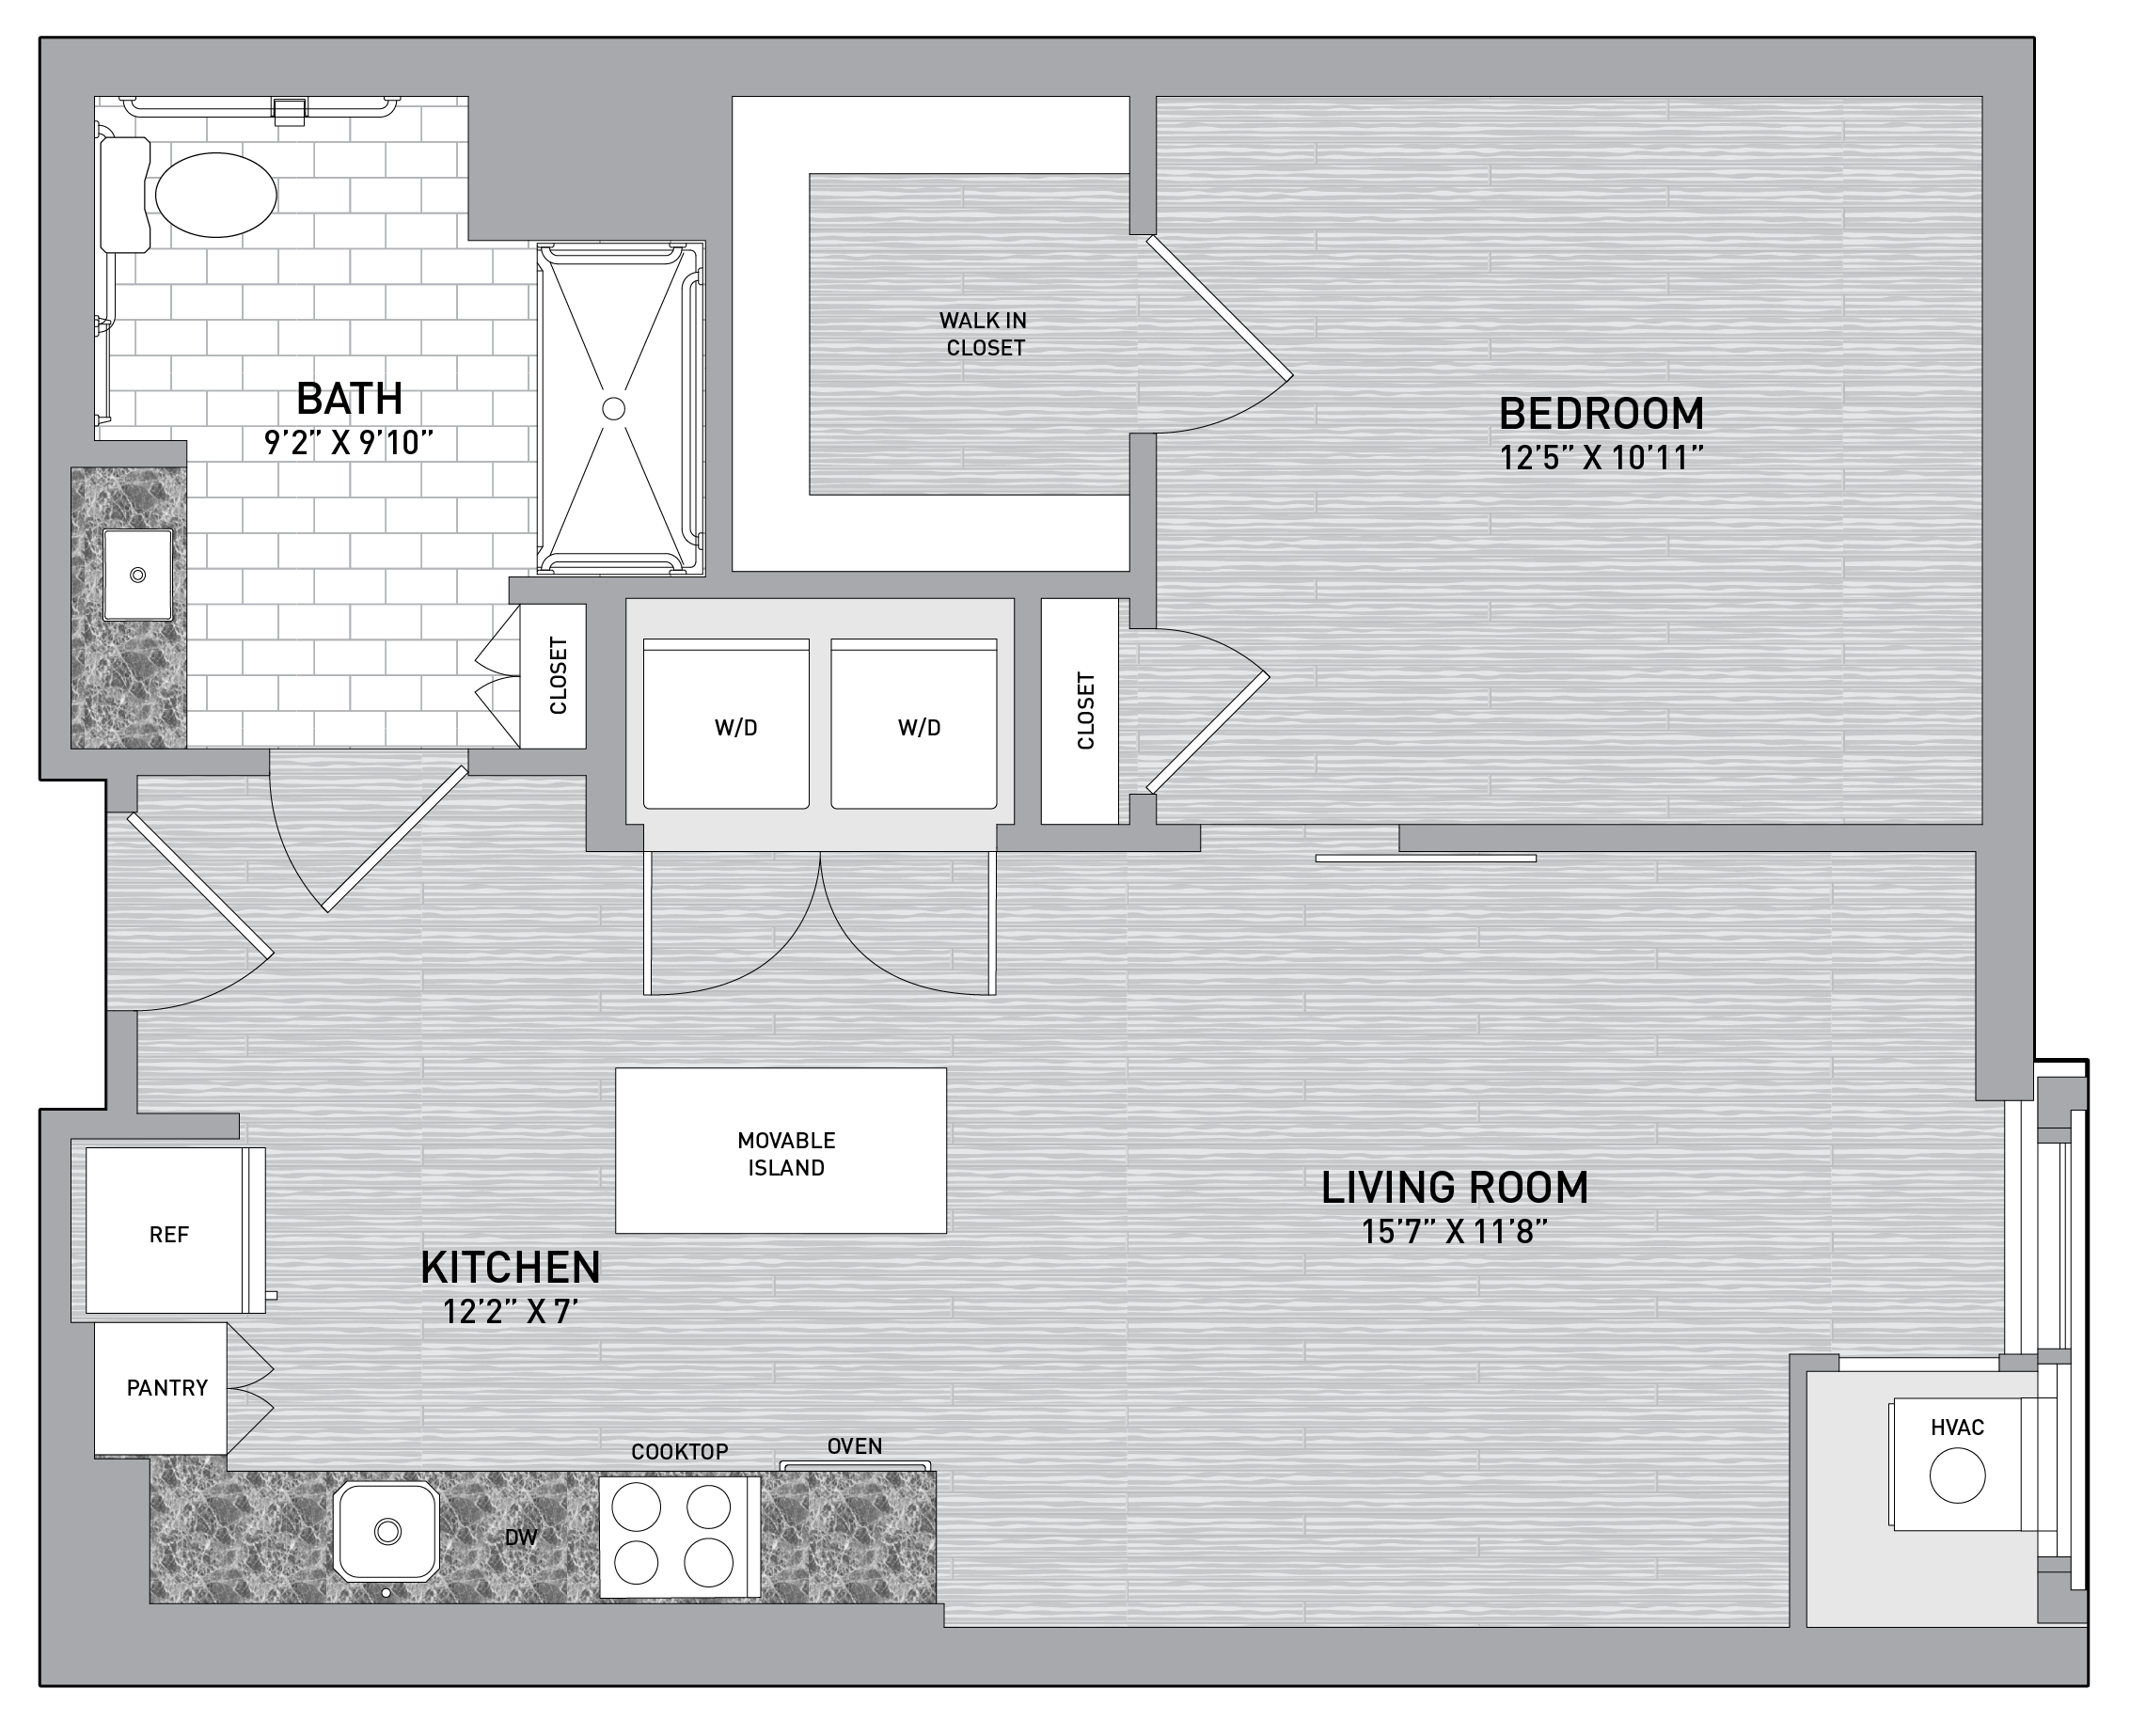 floorplan image of unit id 0821